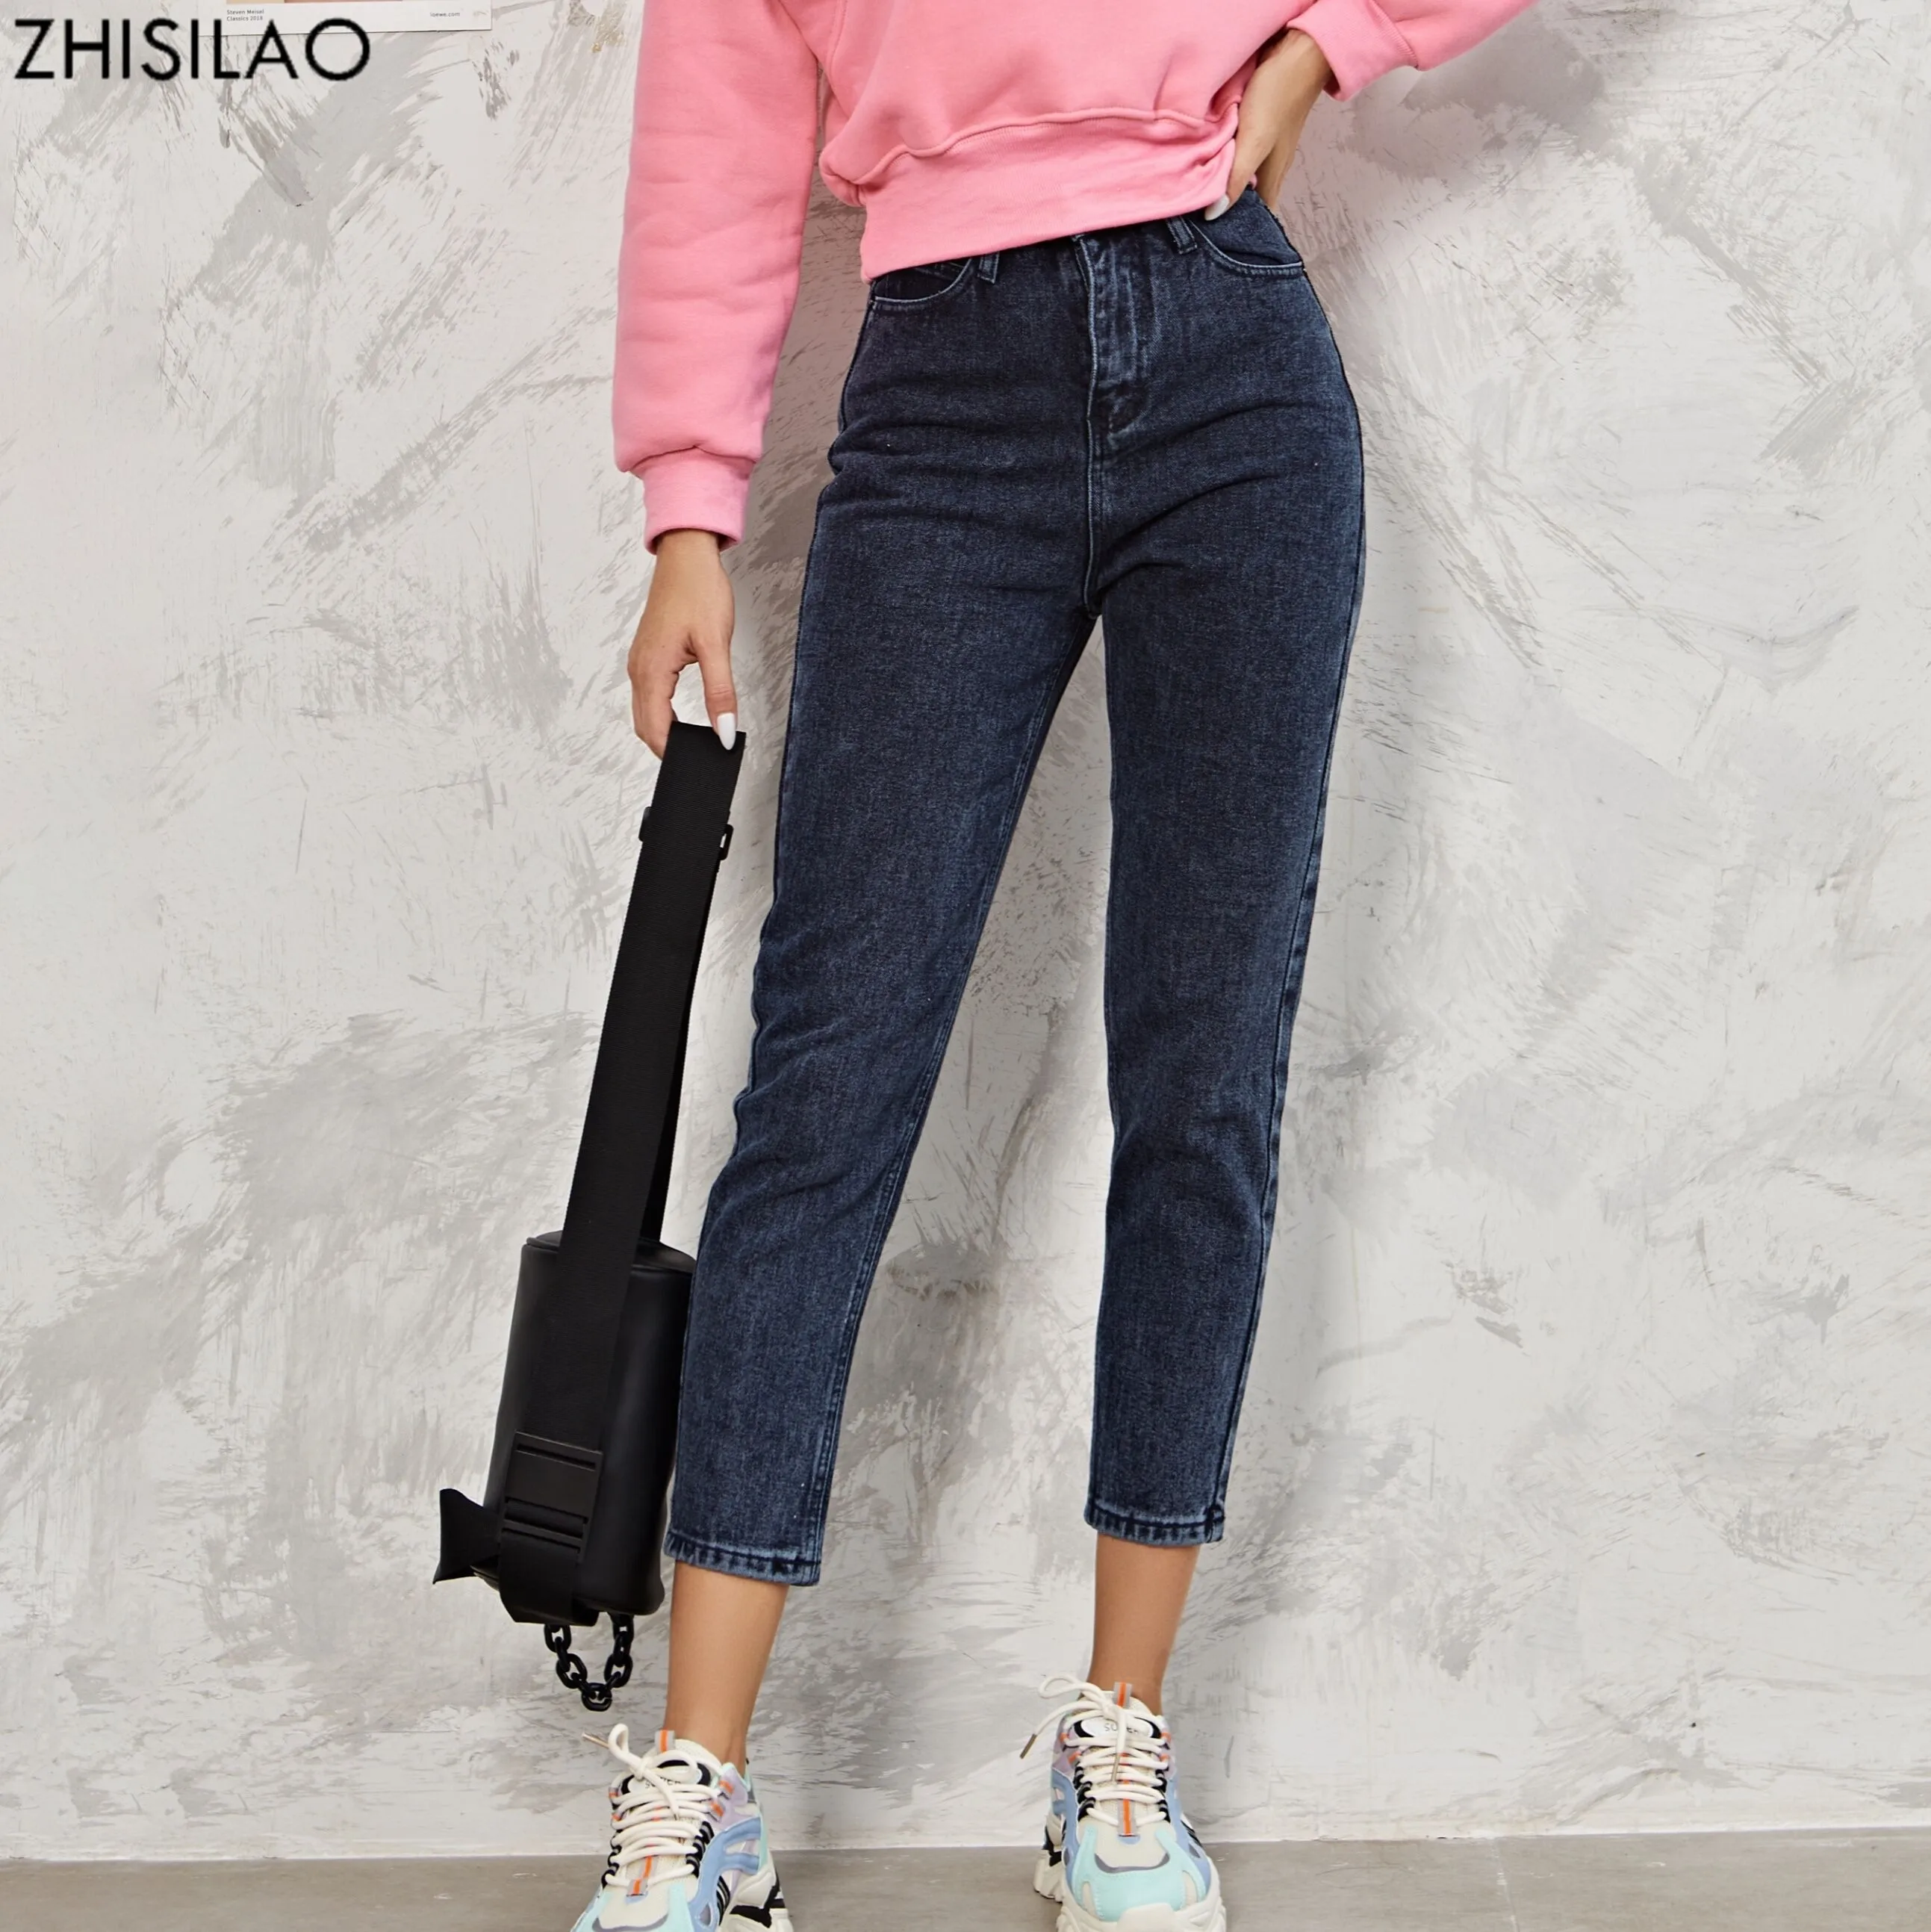 ZHISILAO шаровары джинсы модные с высокой талией 100% хлопок свободные винтажные синие